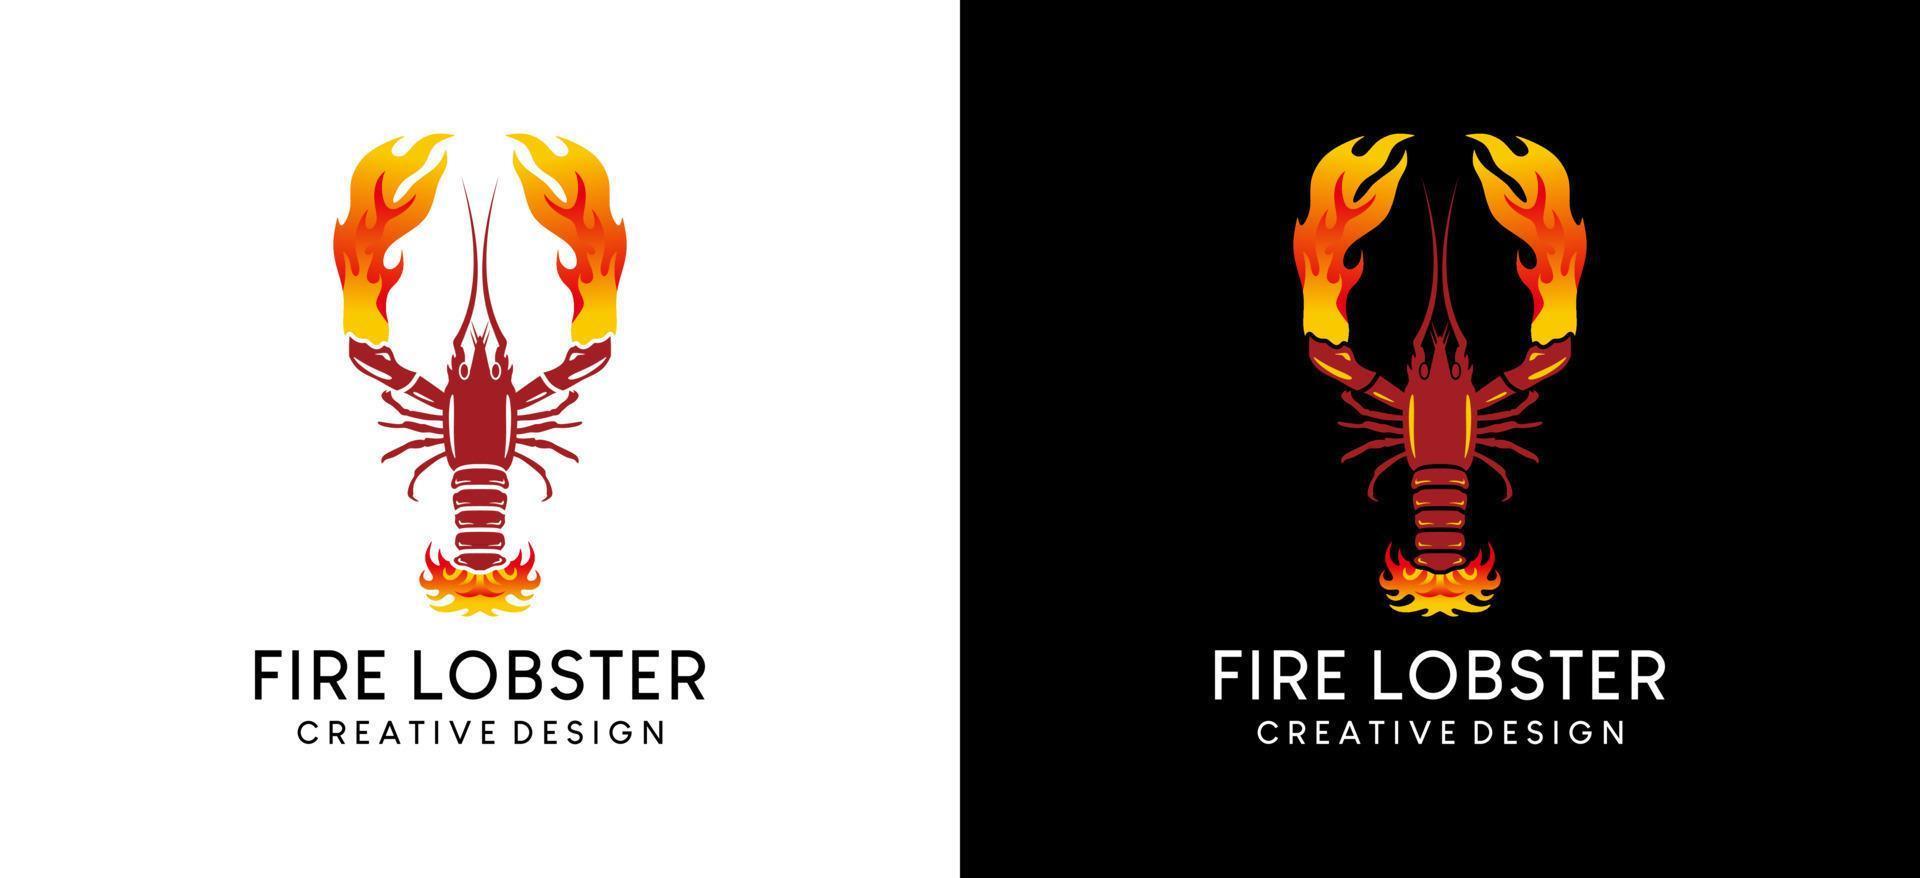 Fire lobster logo design, restaurant or grilled lobster logo vector illustration